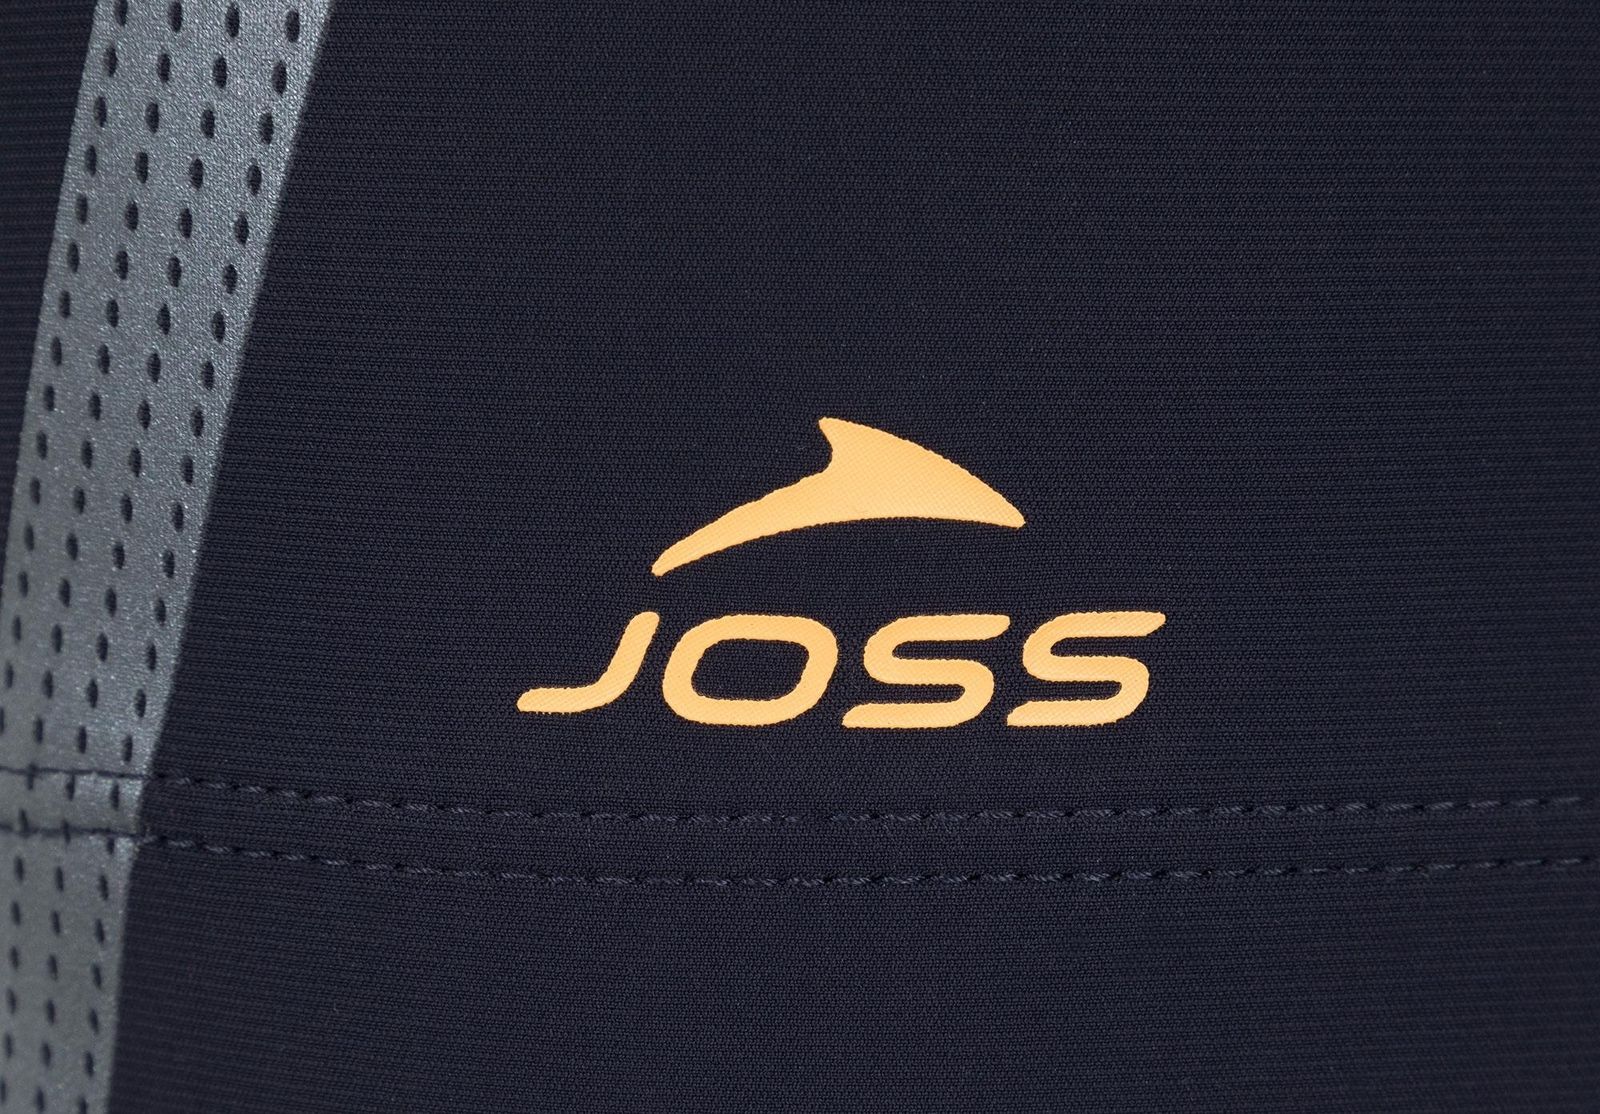   Joss Men's Swim Trunks, : -. S19AJSWTM06-Z4.  46